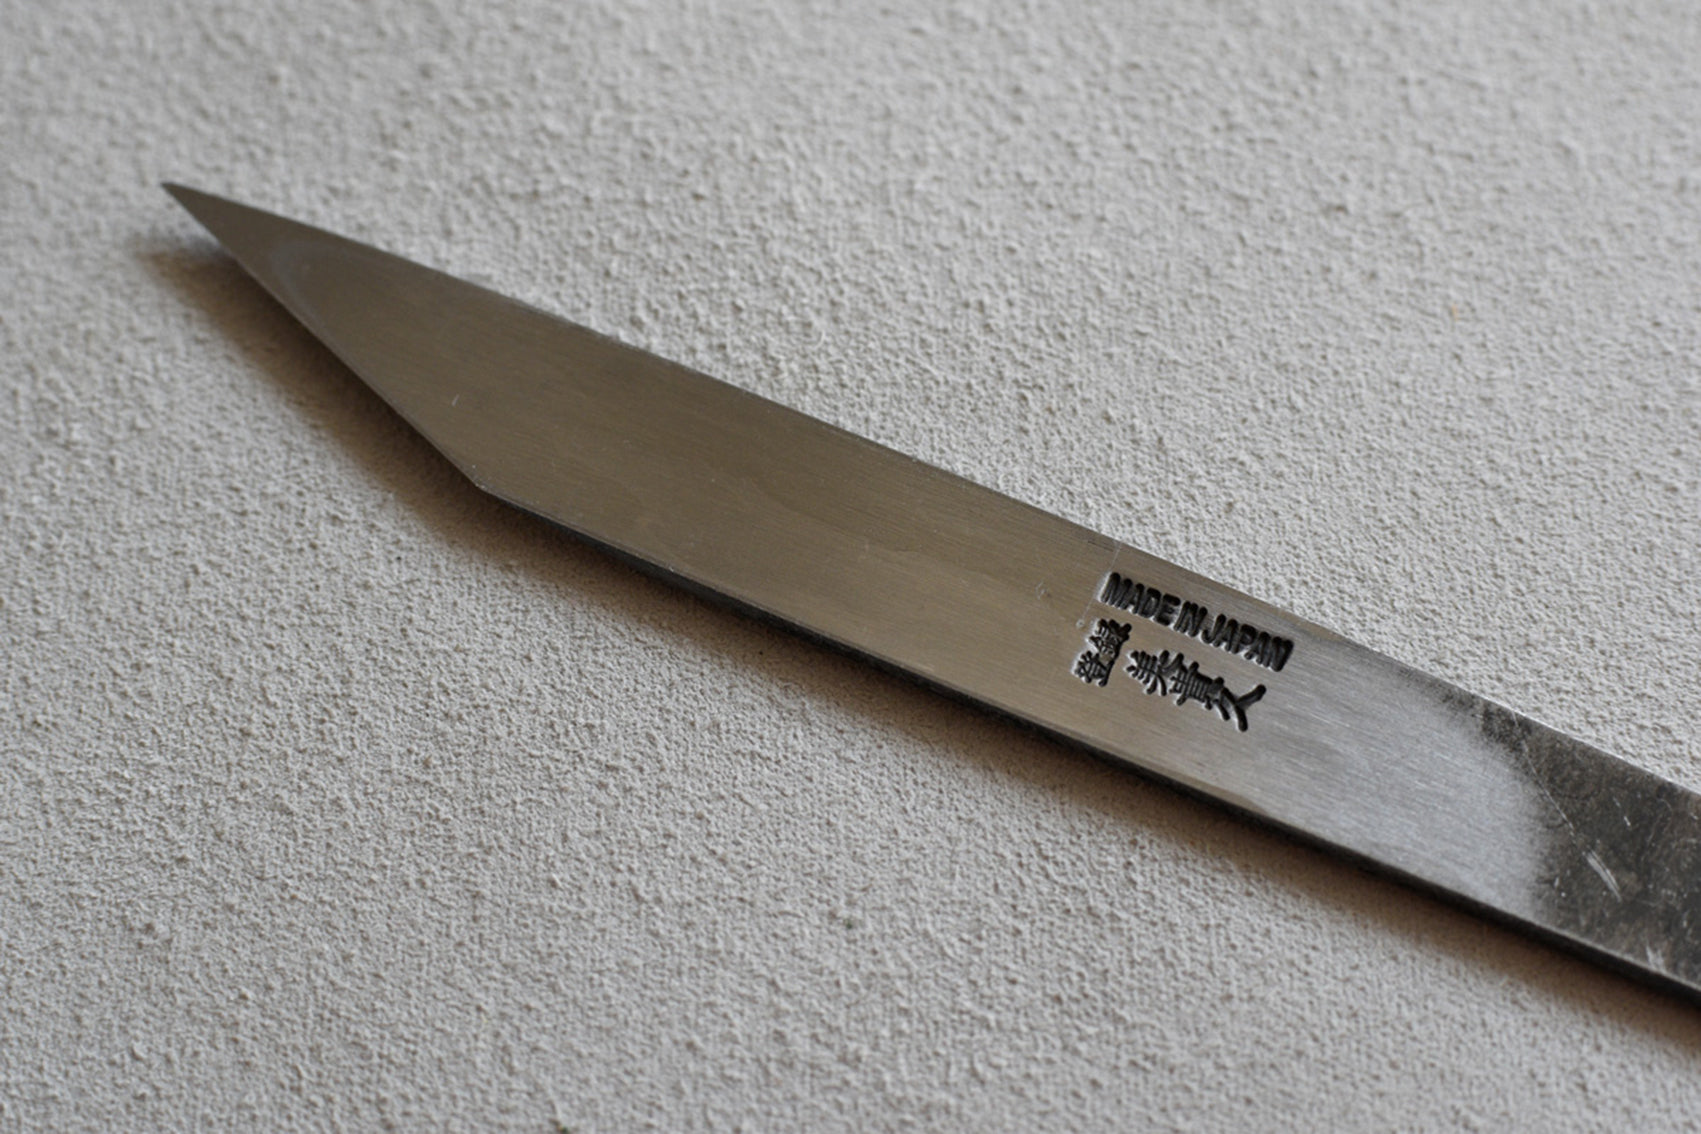 Kiridashi knife 180mm (7.1)